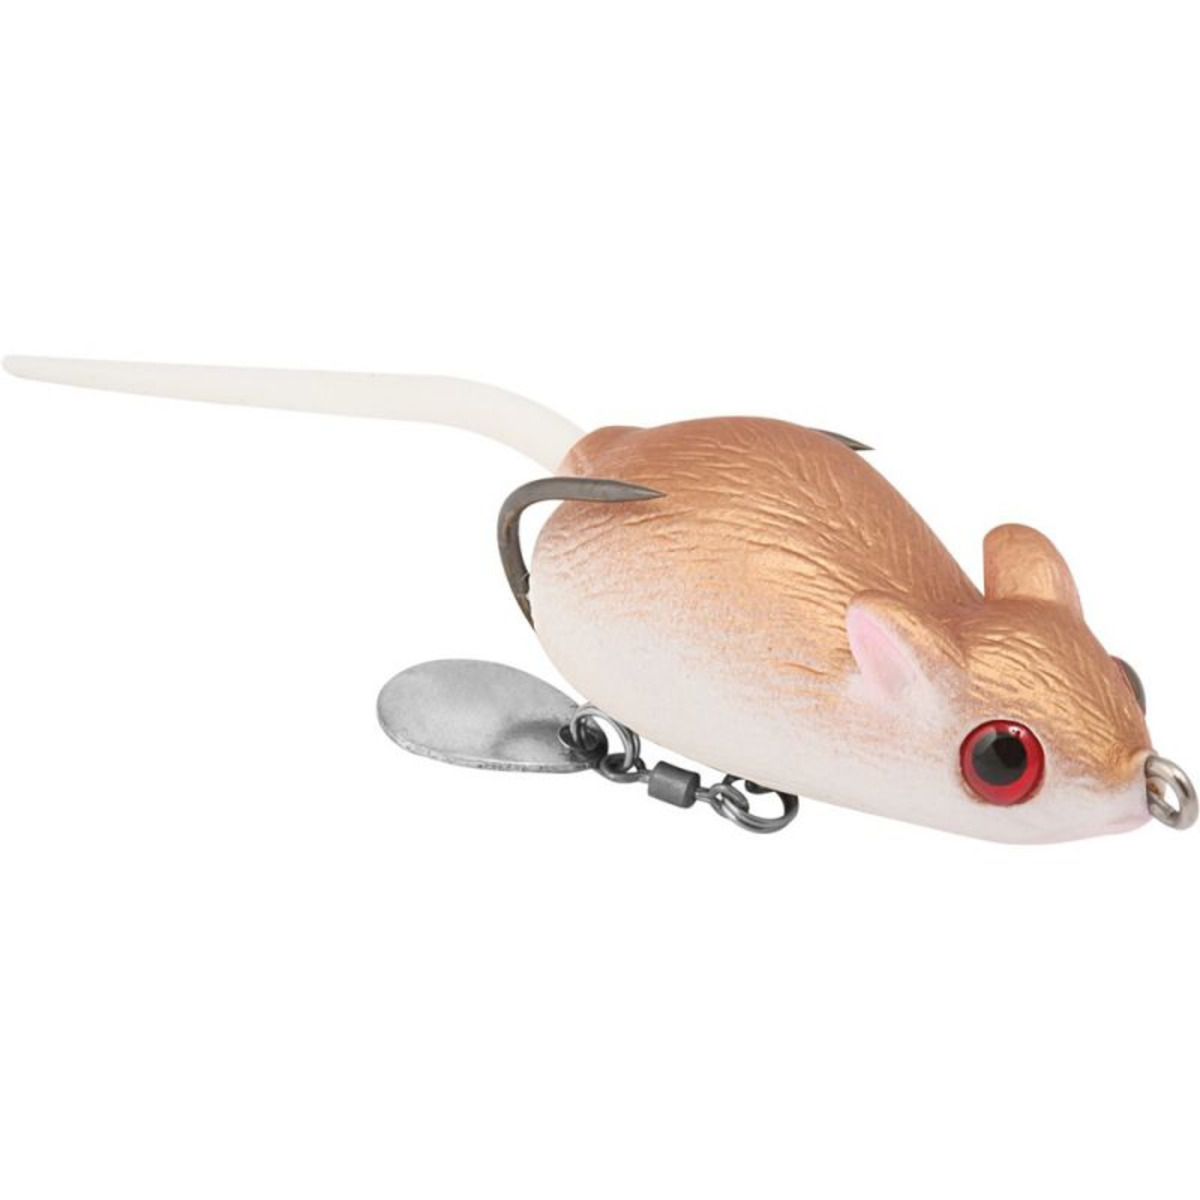 Rapture Dancer Mouse - 14.0 g - 65 mm - Brown